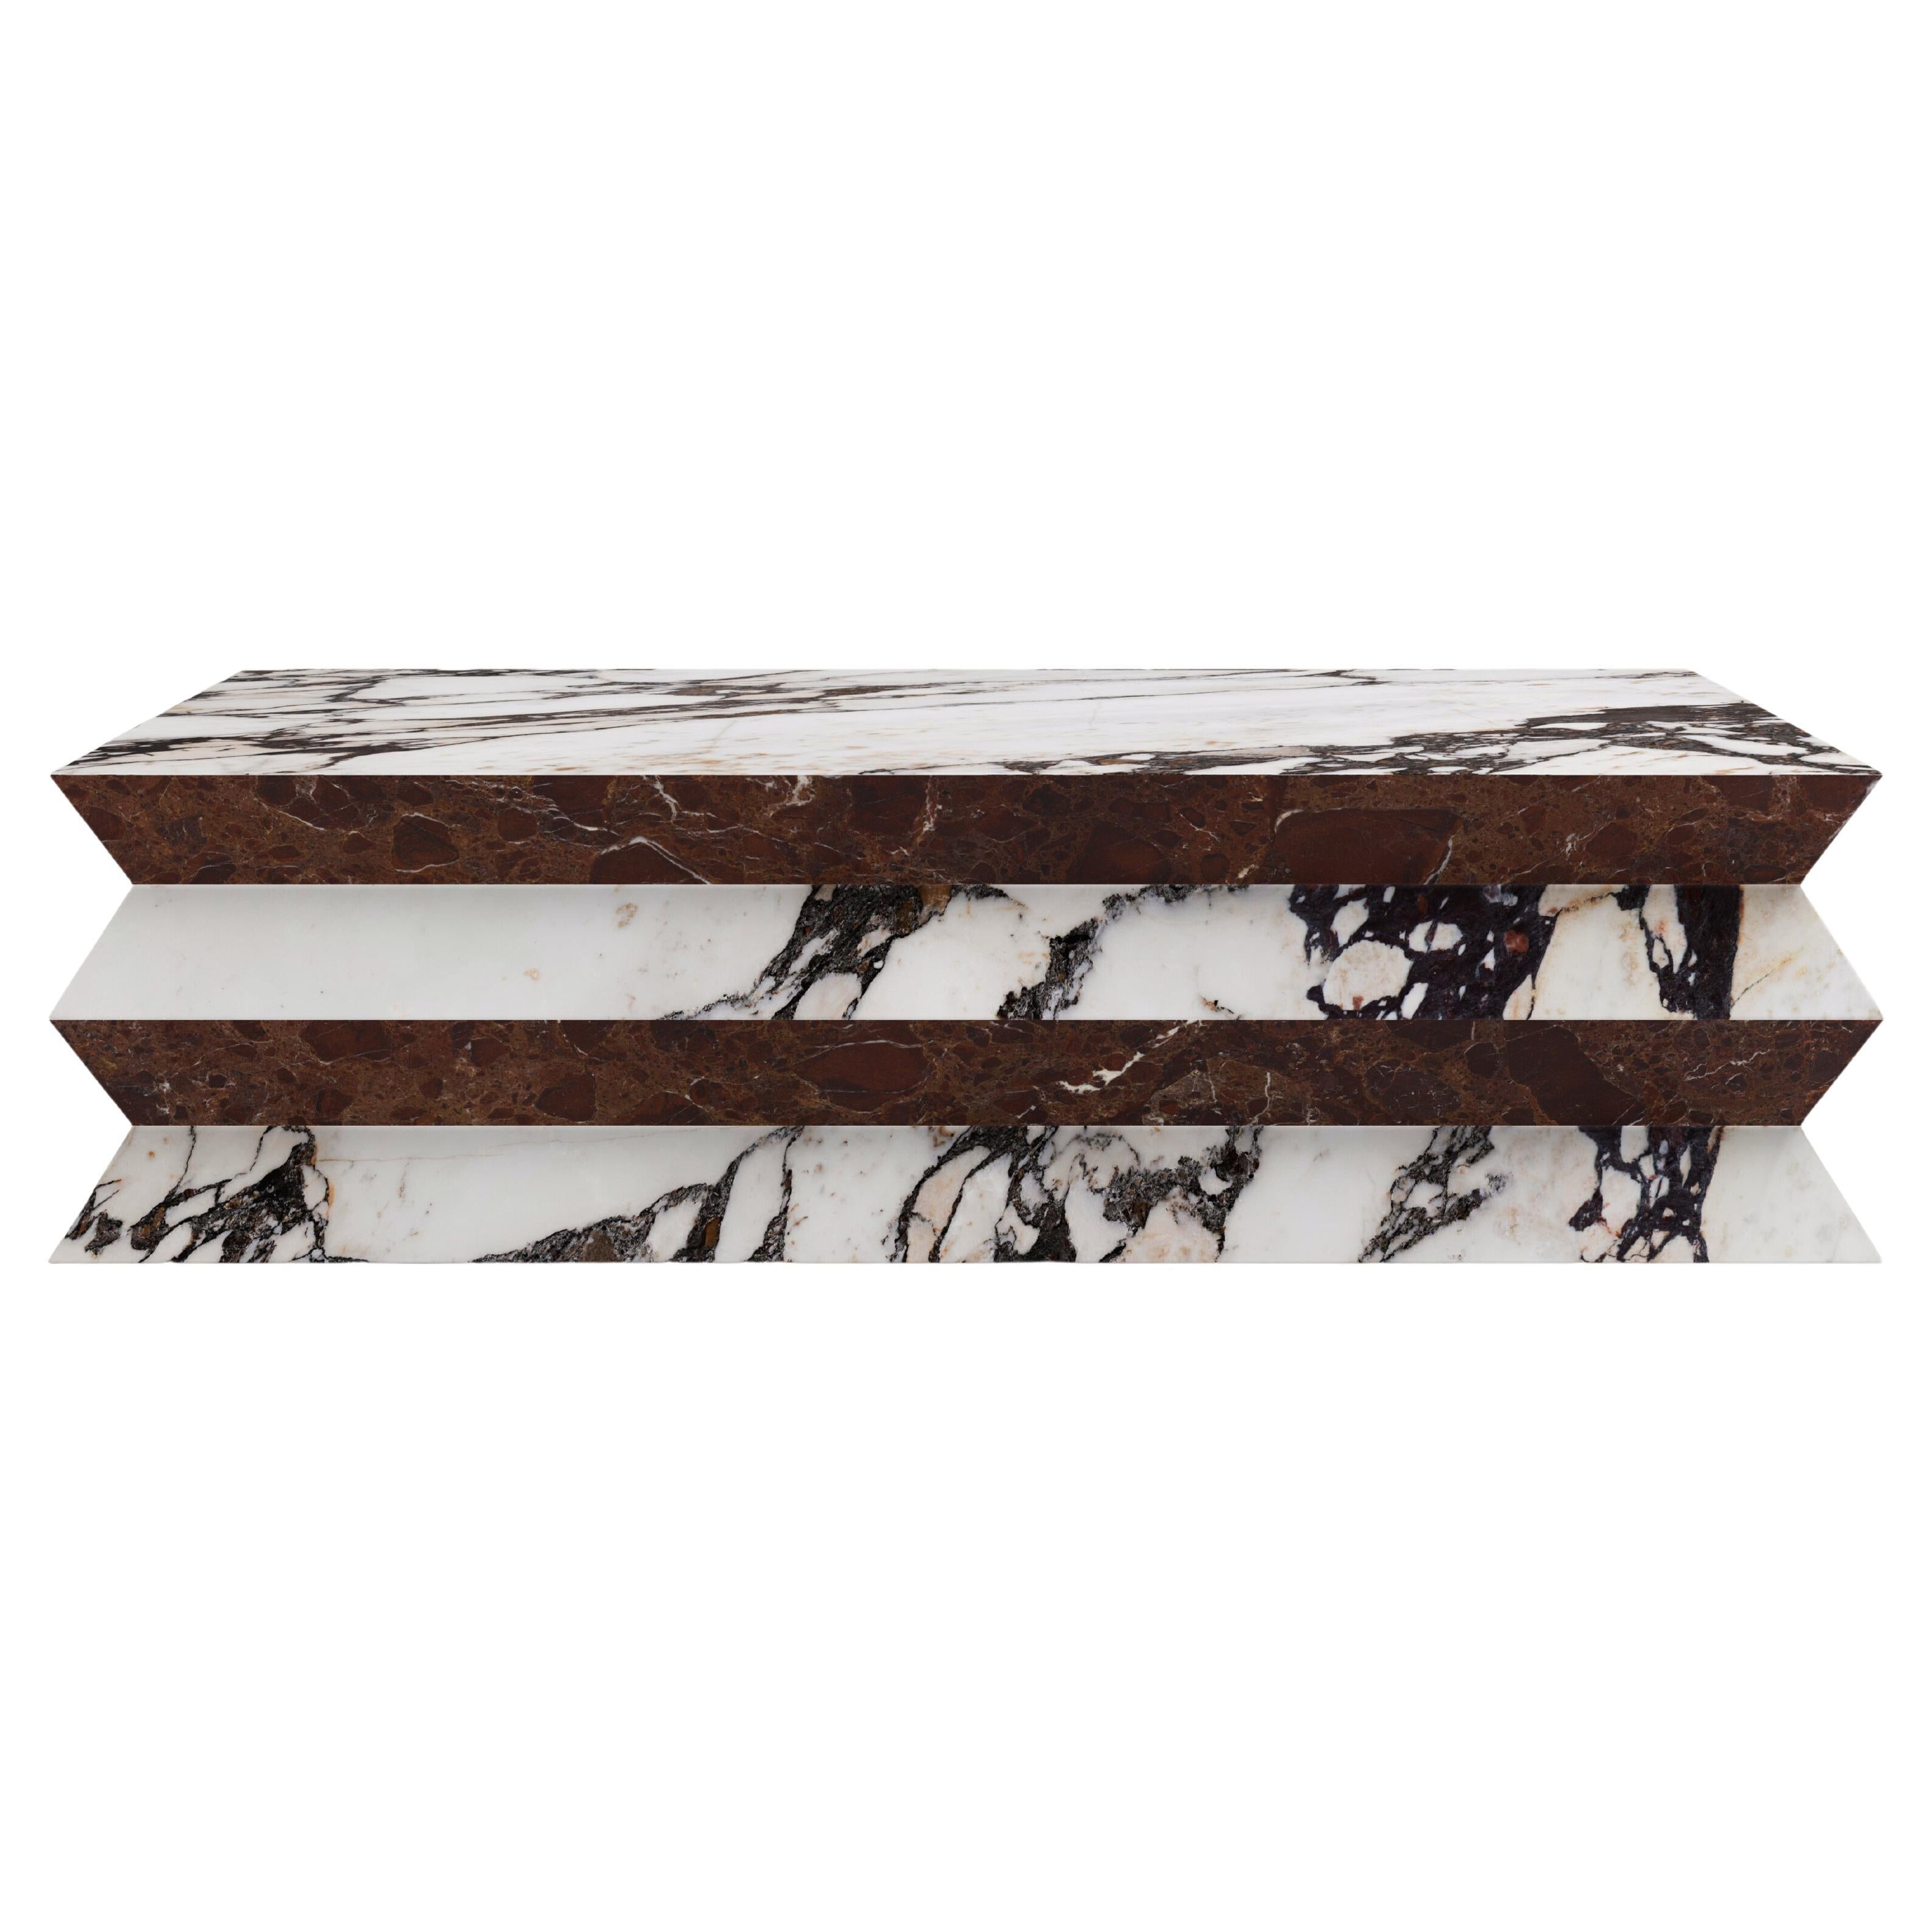 FORM(LA) Grinza table basse rectangulaire 48 po. (L) x 30 po. (L) x 16 po. (H) marbre Calacatta Viola en vente